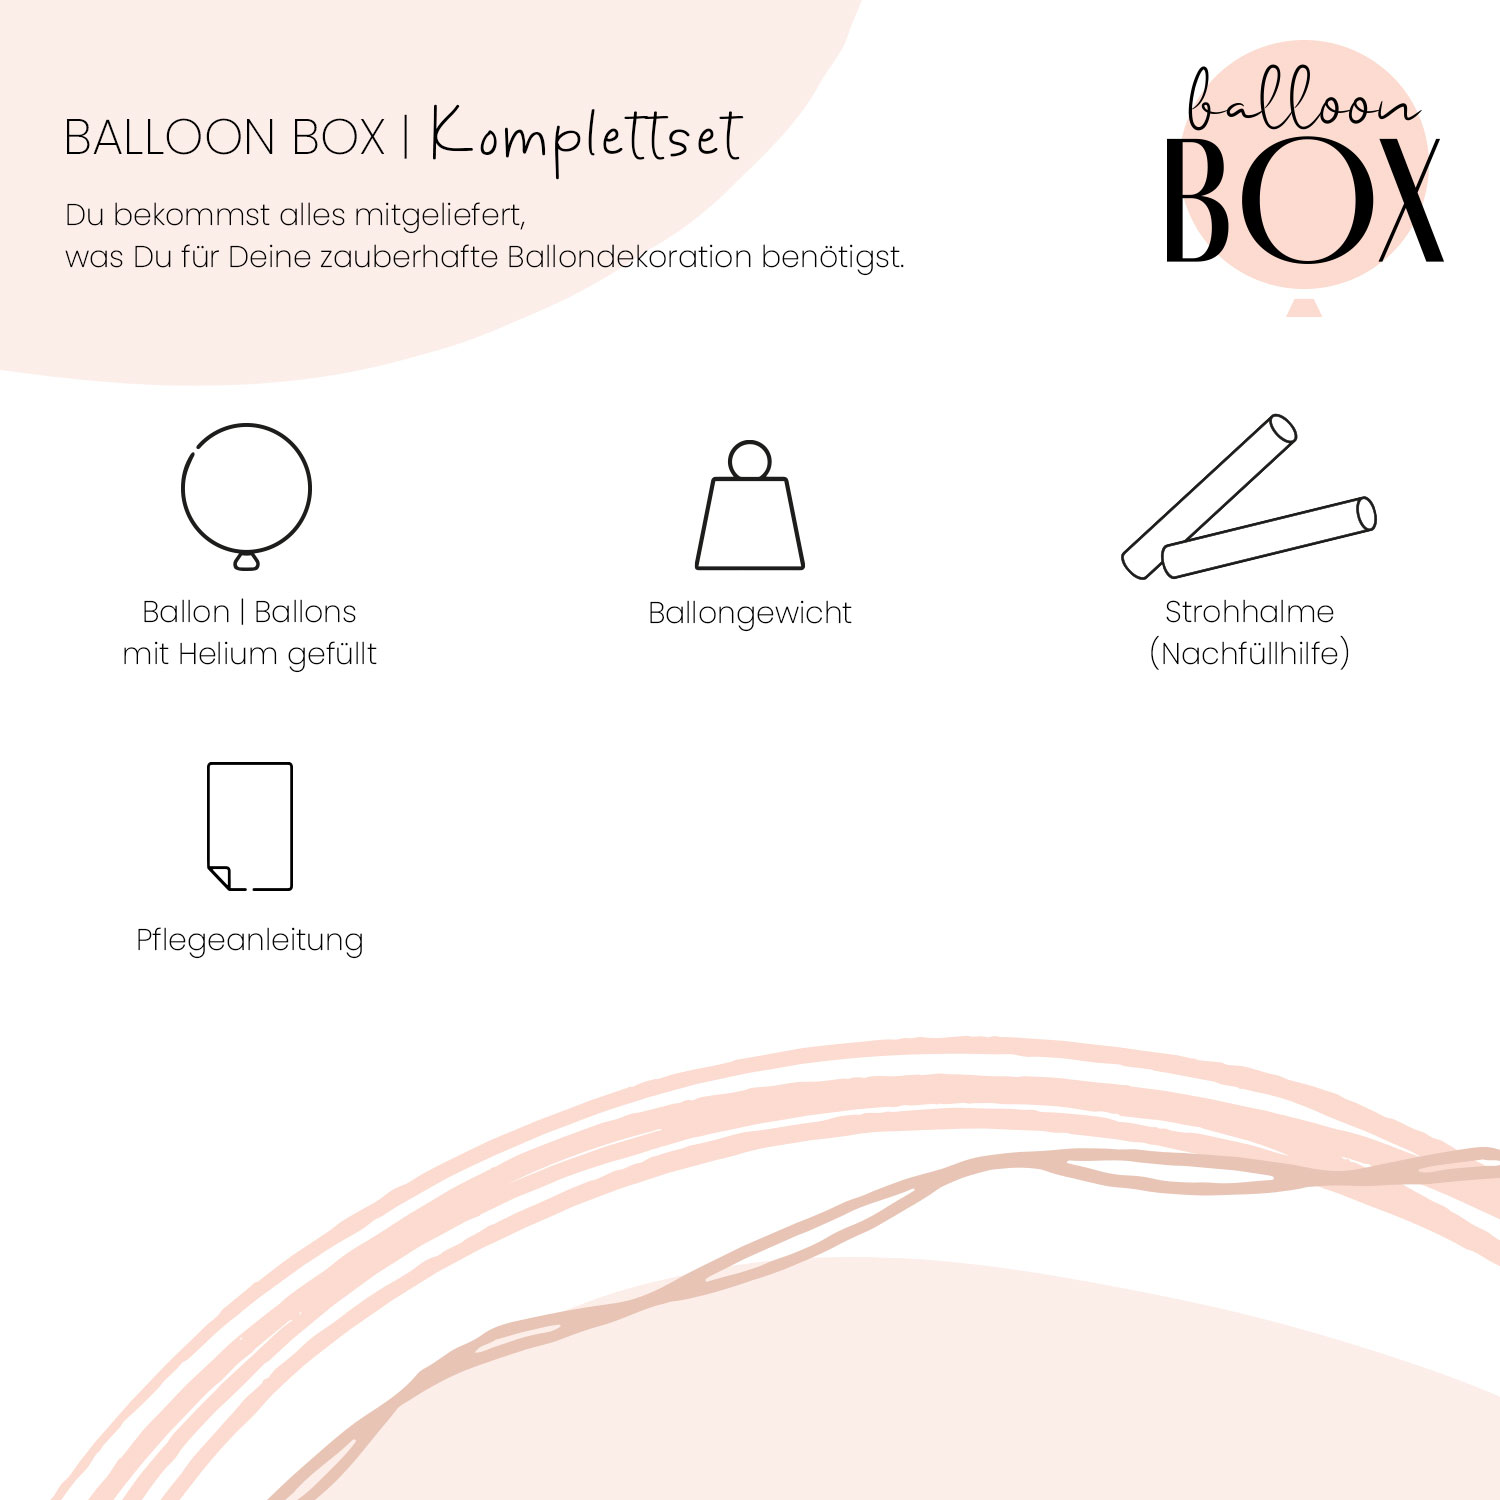 Fotoballon in a Box - BOY or GIRL